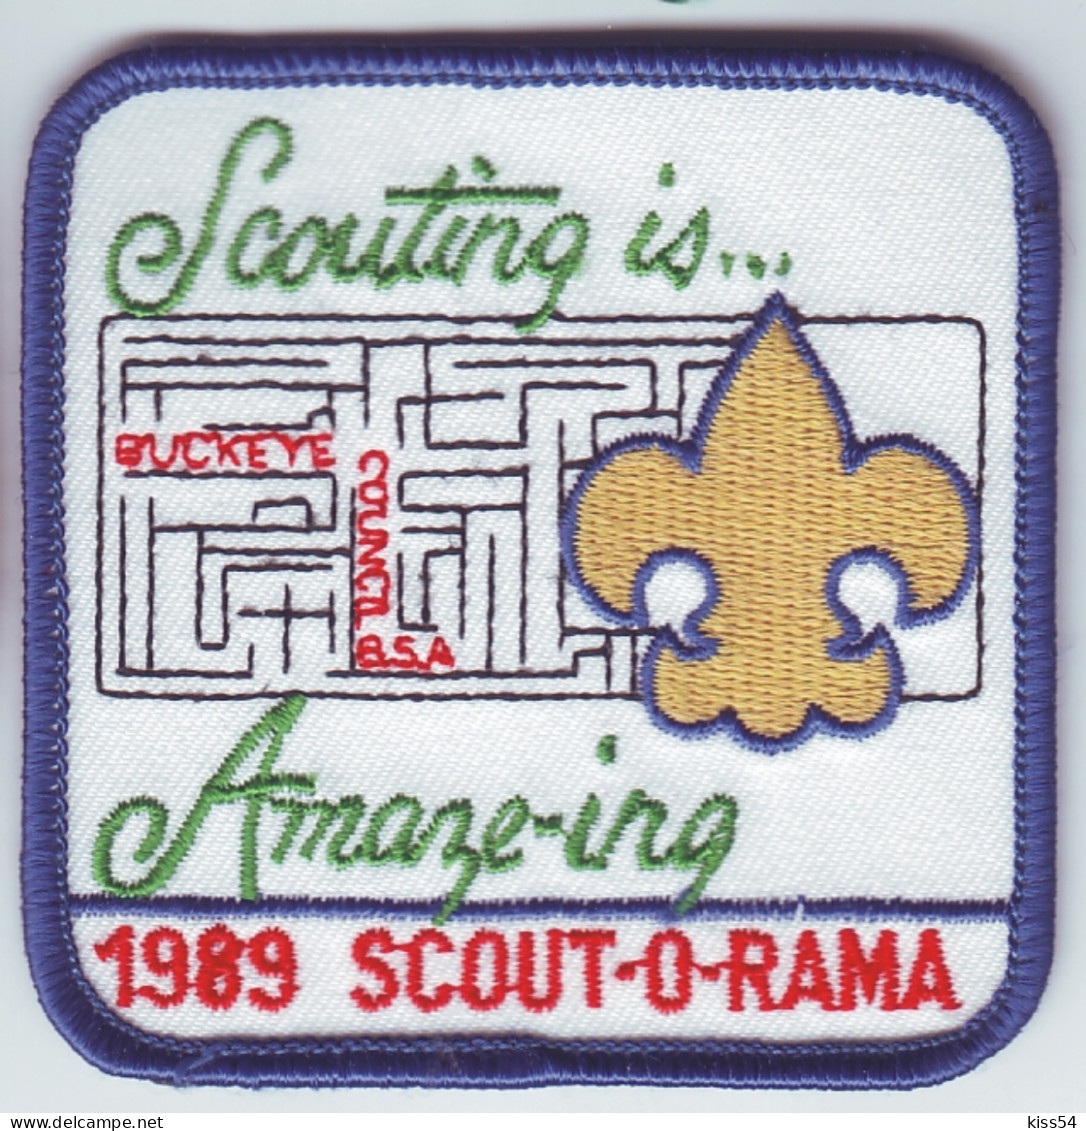 B 29 - 27 USA Scout Badge - 1989 - Pfadfinder-Bewegung